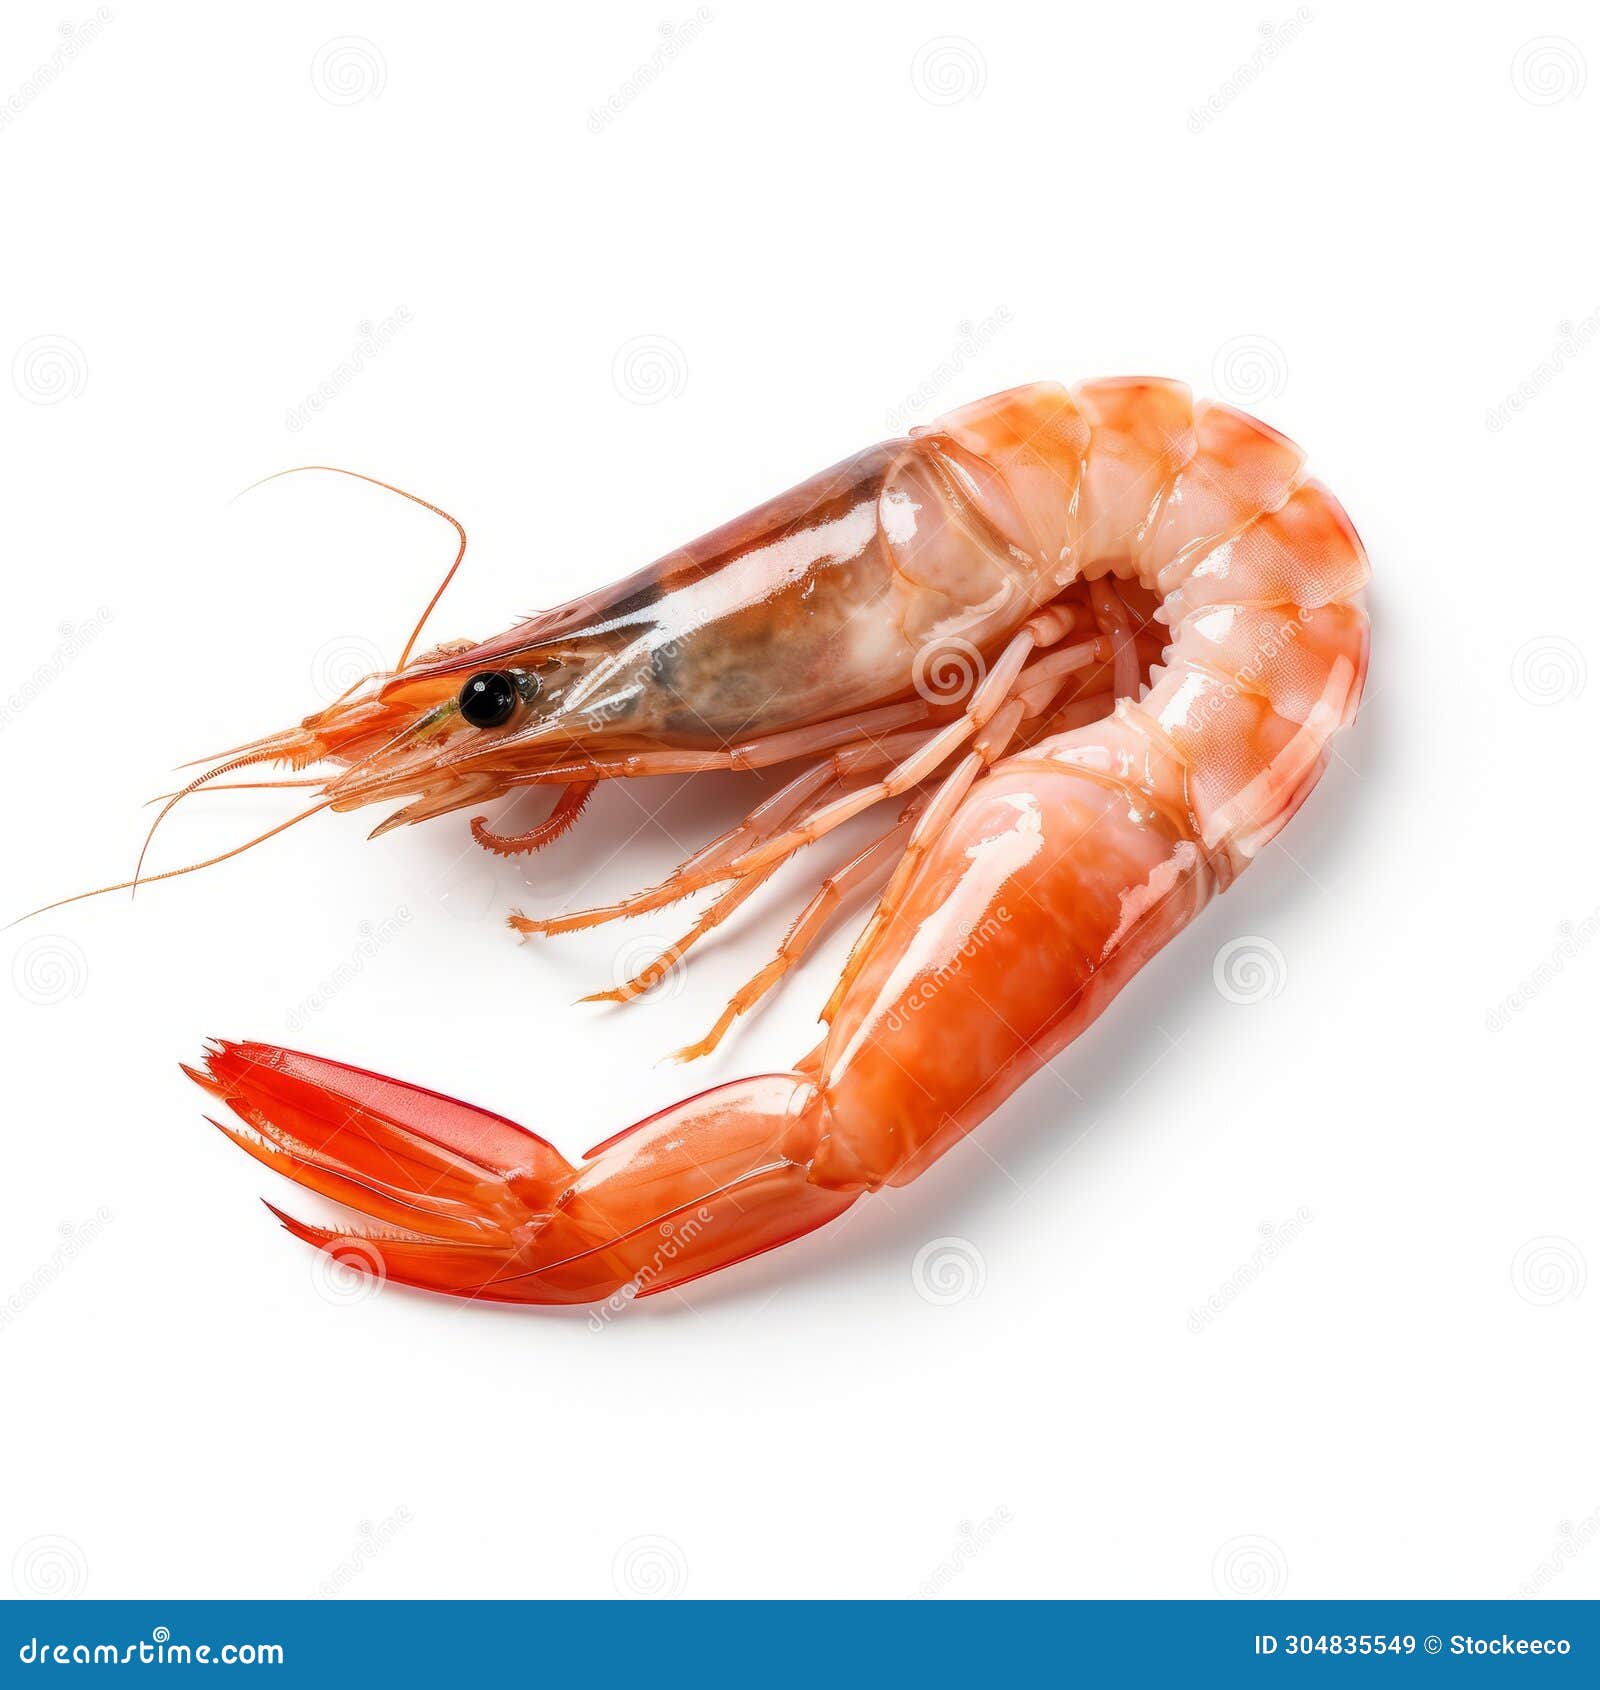 minimal retouched shrimp on white background - 32k uhd